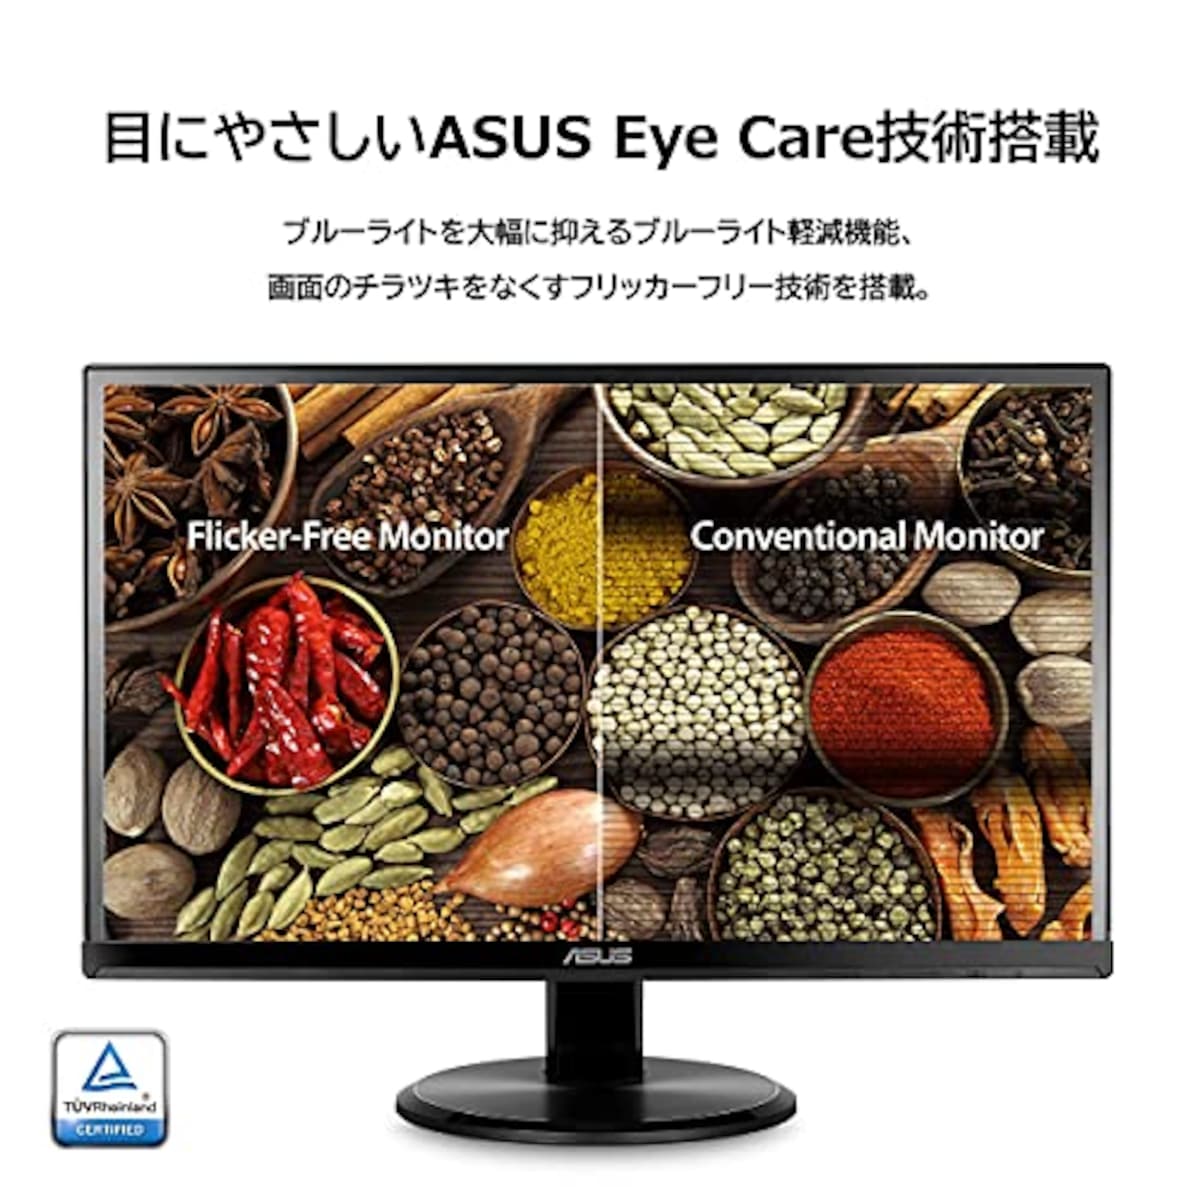  【Amazon.co.jp限定】ASUS モニター Eye Care VA229HR 21.5インチ FHD 1080p /フルD/IPS/75Hz/HDMI,D-sub/ブルーライト軽減/フリッカフリー/VESA対応/スピーカー/3年保証画像7 